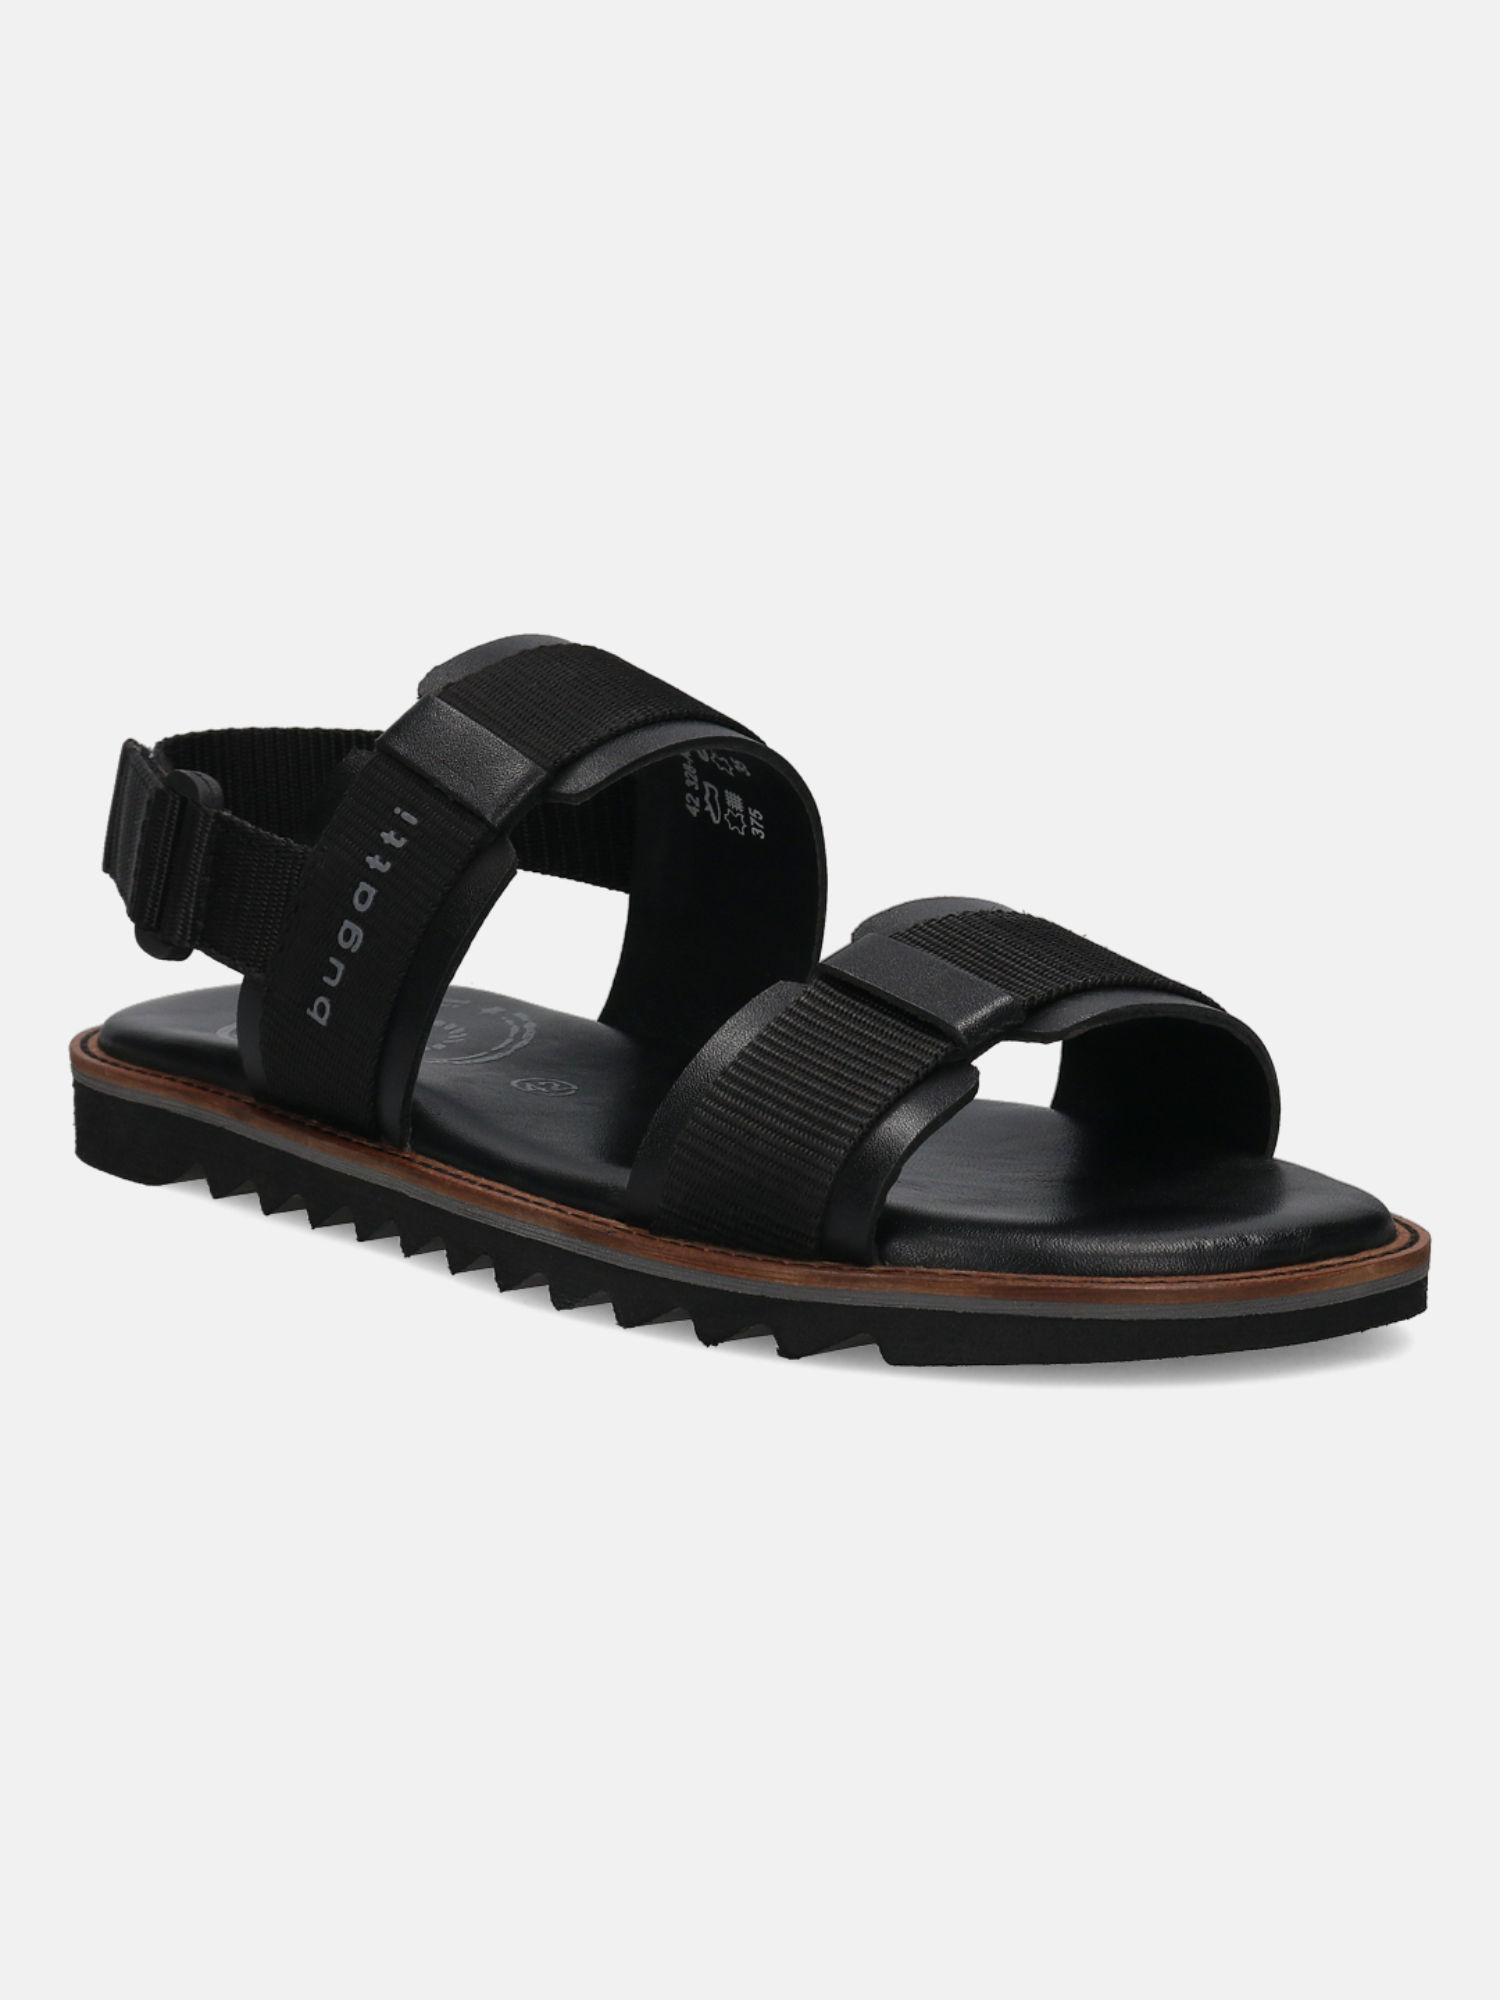 dorfu men black leather back strap sandals